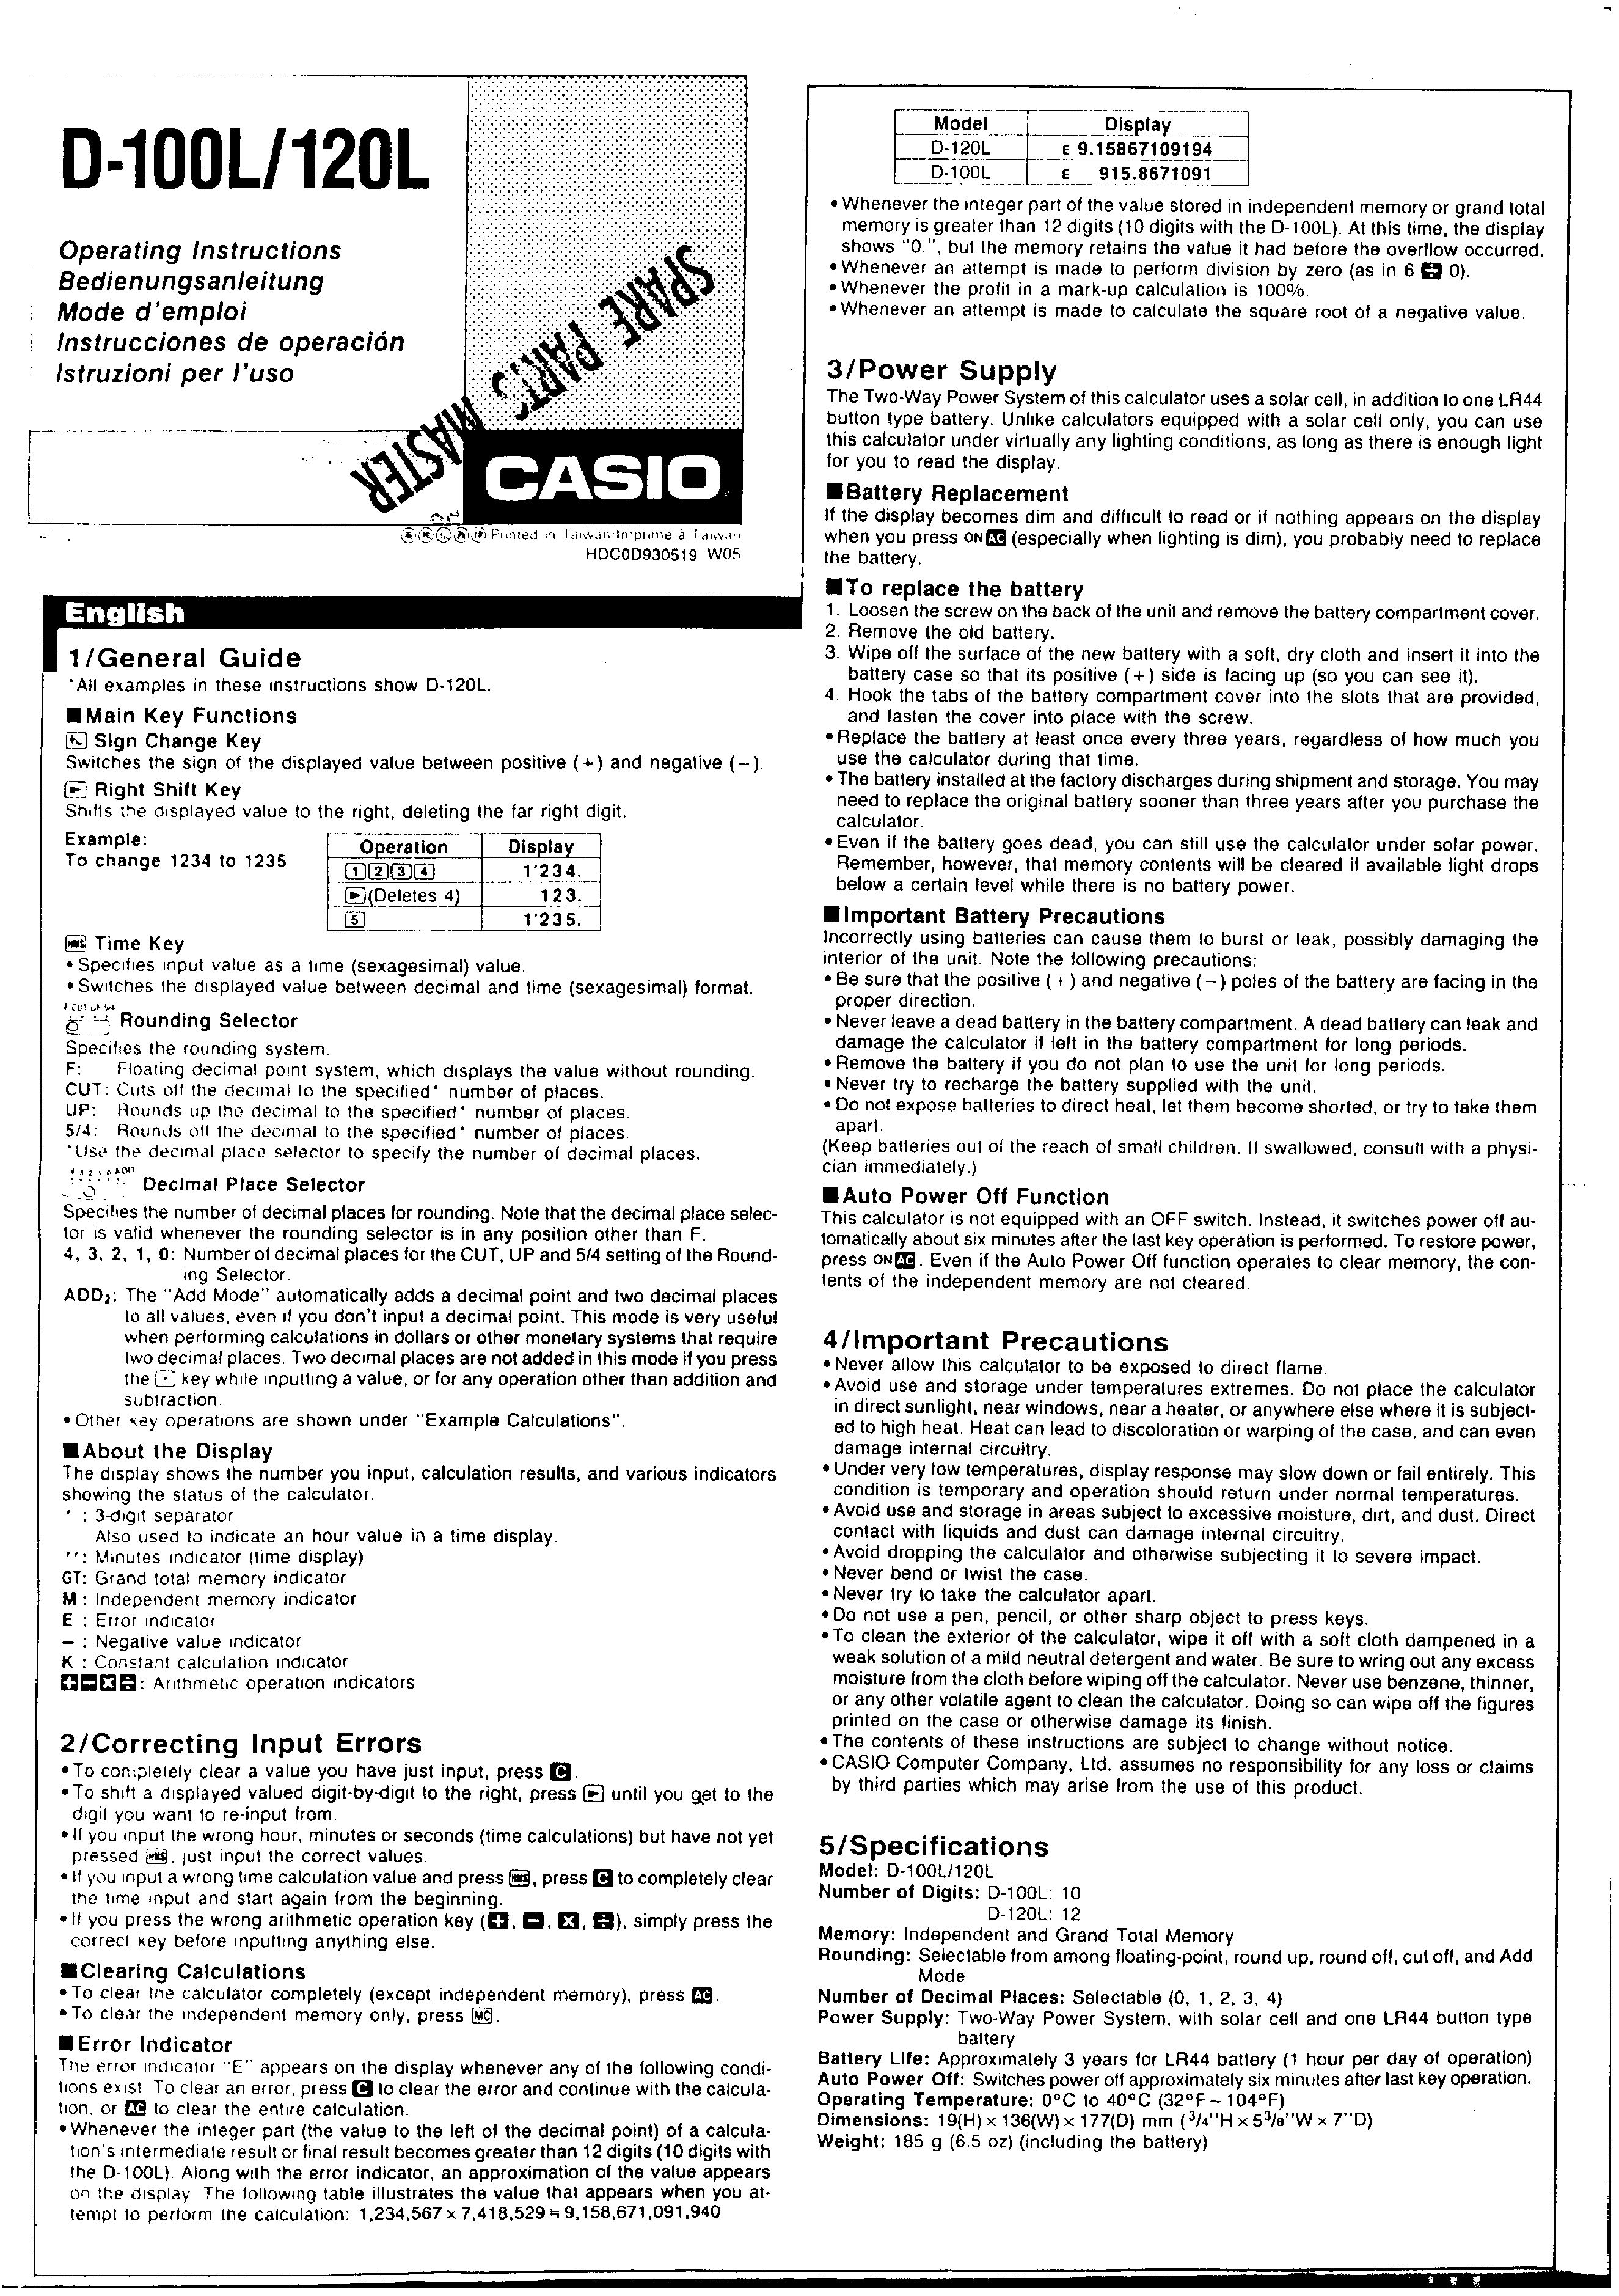 CASIO D-120L - Owner's Manual Immediate Download